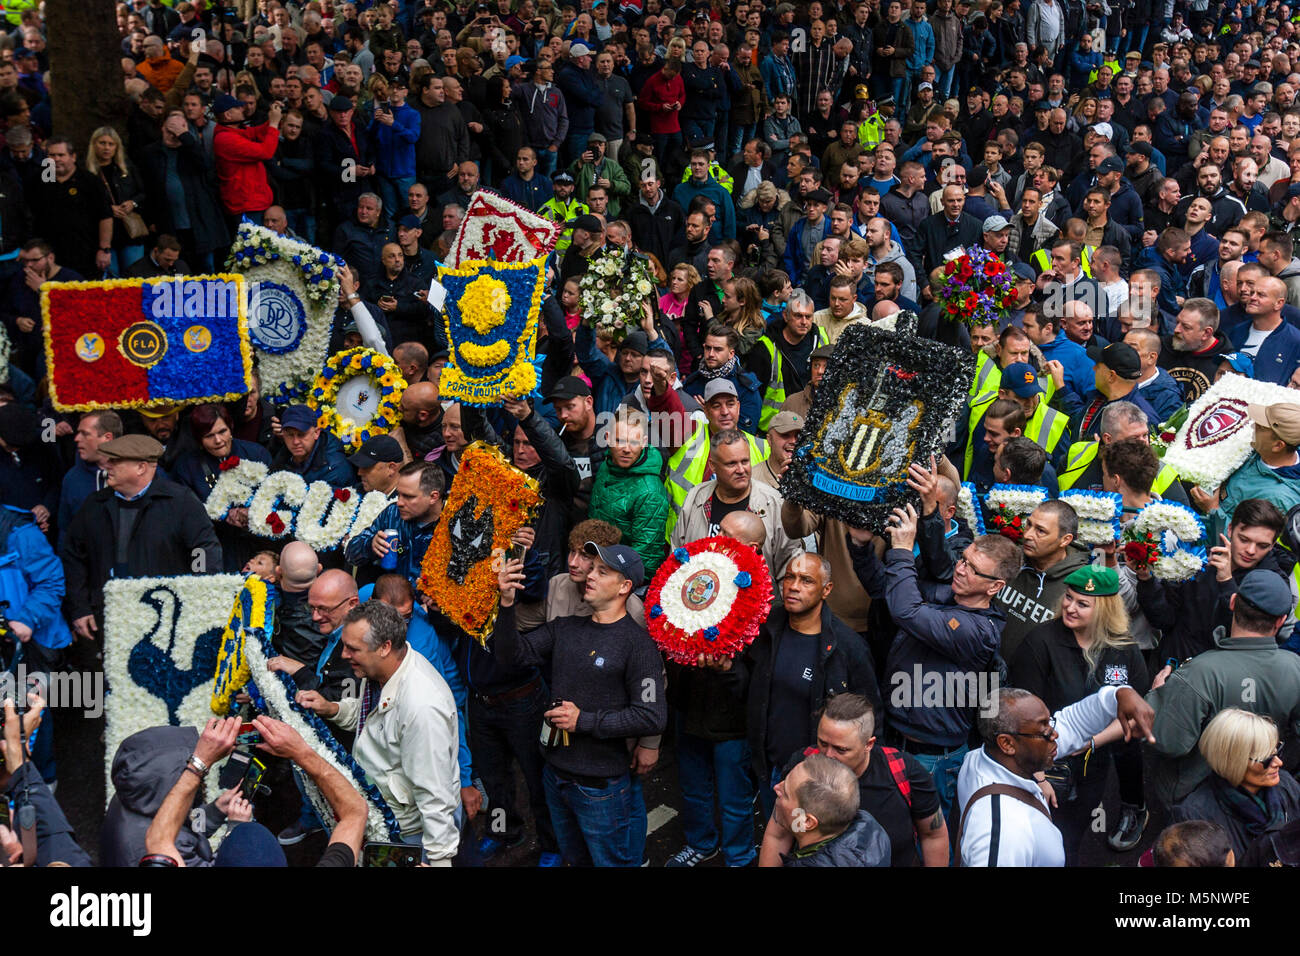 Fußball-Fans aus ganz Deutschland versammeln sich in Central London gegen Extremismus unter dem Banner der FLA bis März (Fußball jungs Alliance), London, UK Stockfoto